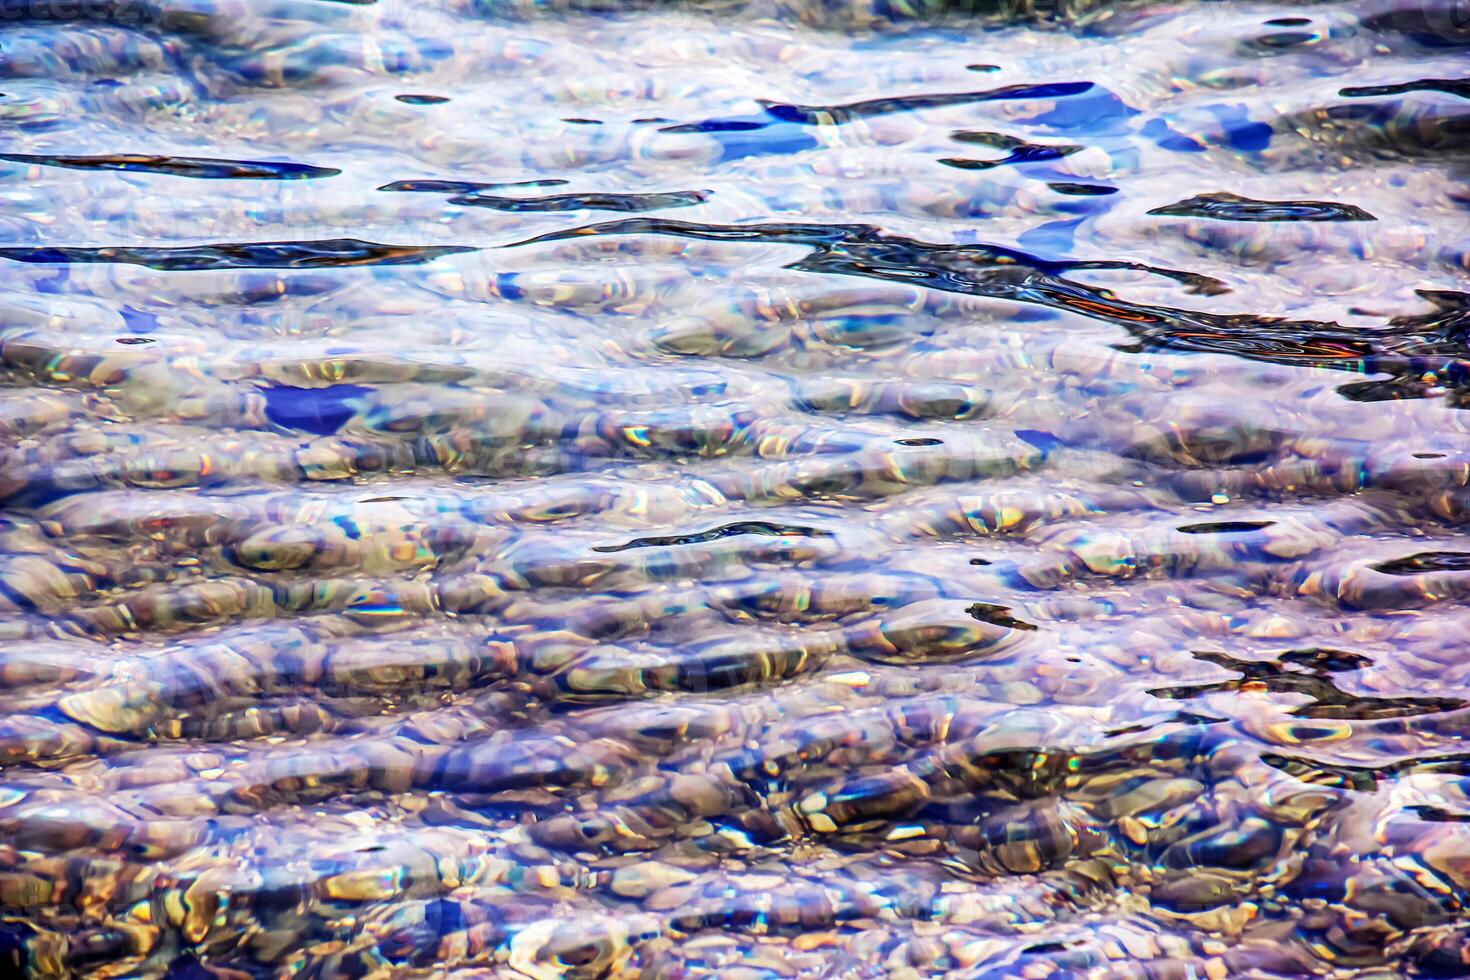 Hintergrund von das Wasser von See traunsee im das Küsten Bereich. bunt Textur von Steine unter Wasser. foto